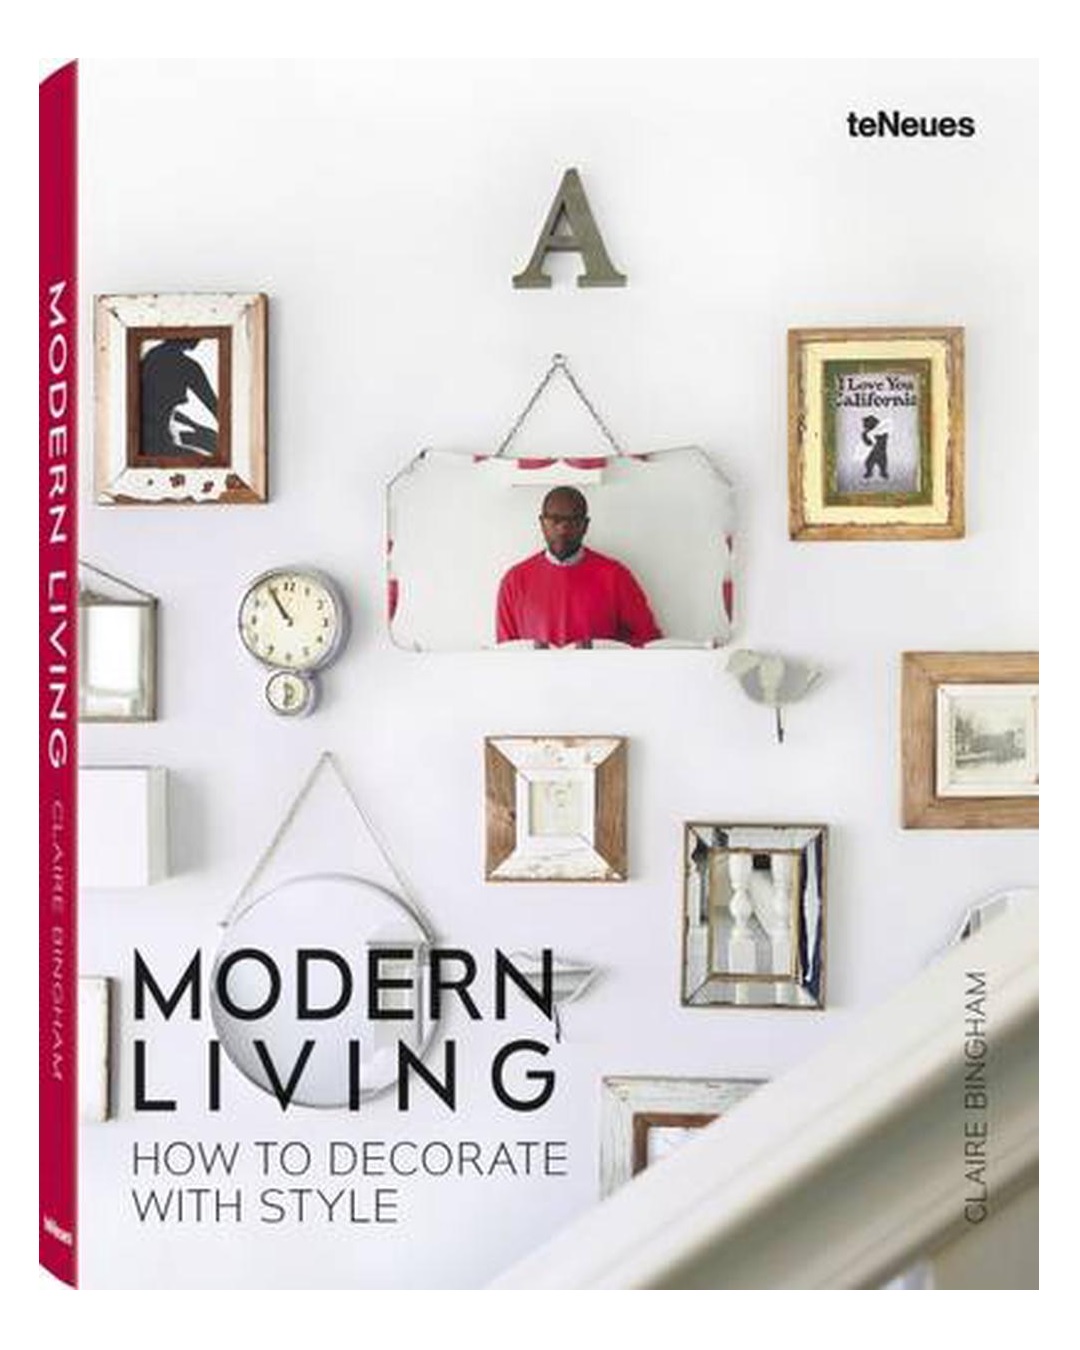 Modern living book